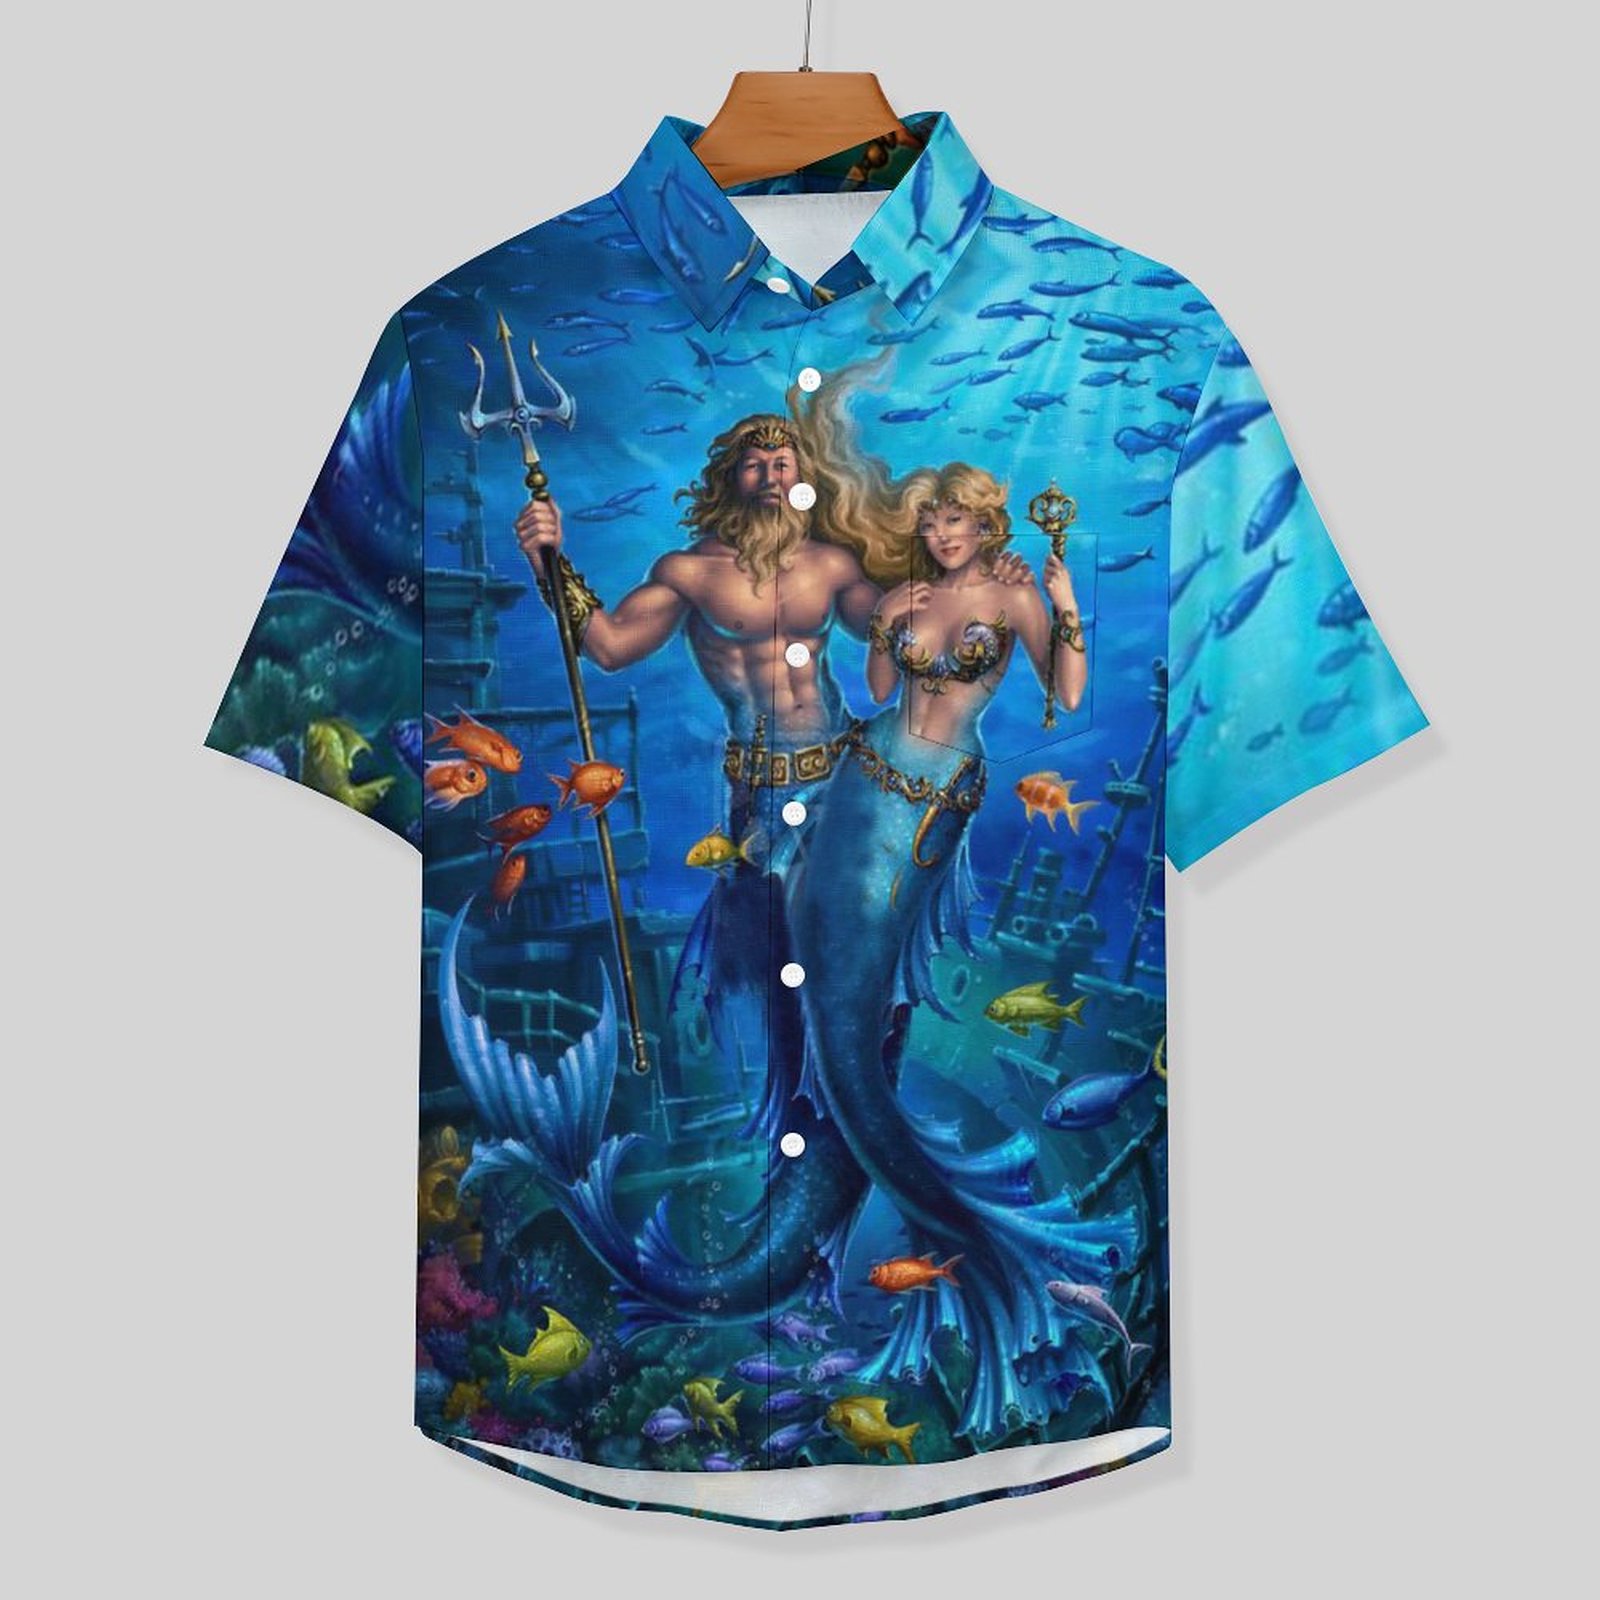 Men's Hawaiian Print Lapel Shirt